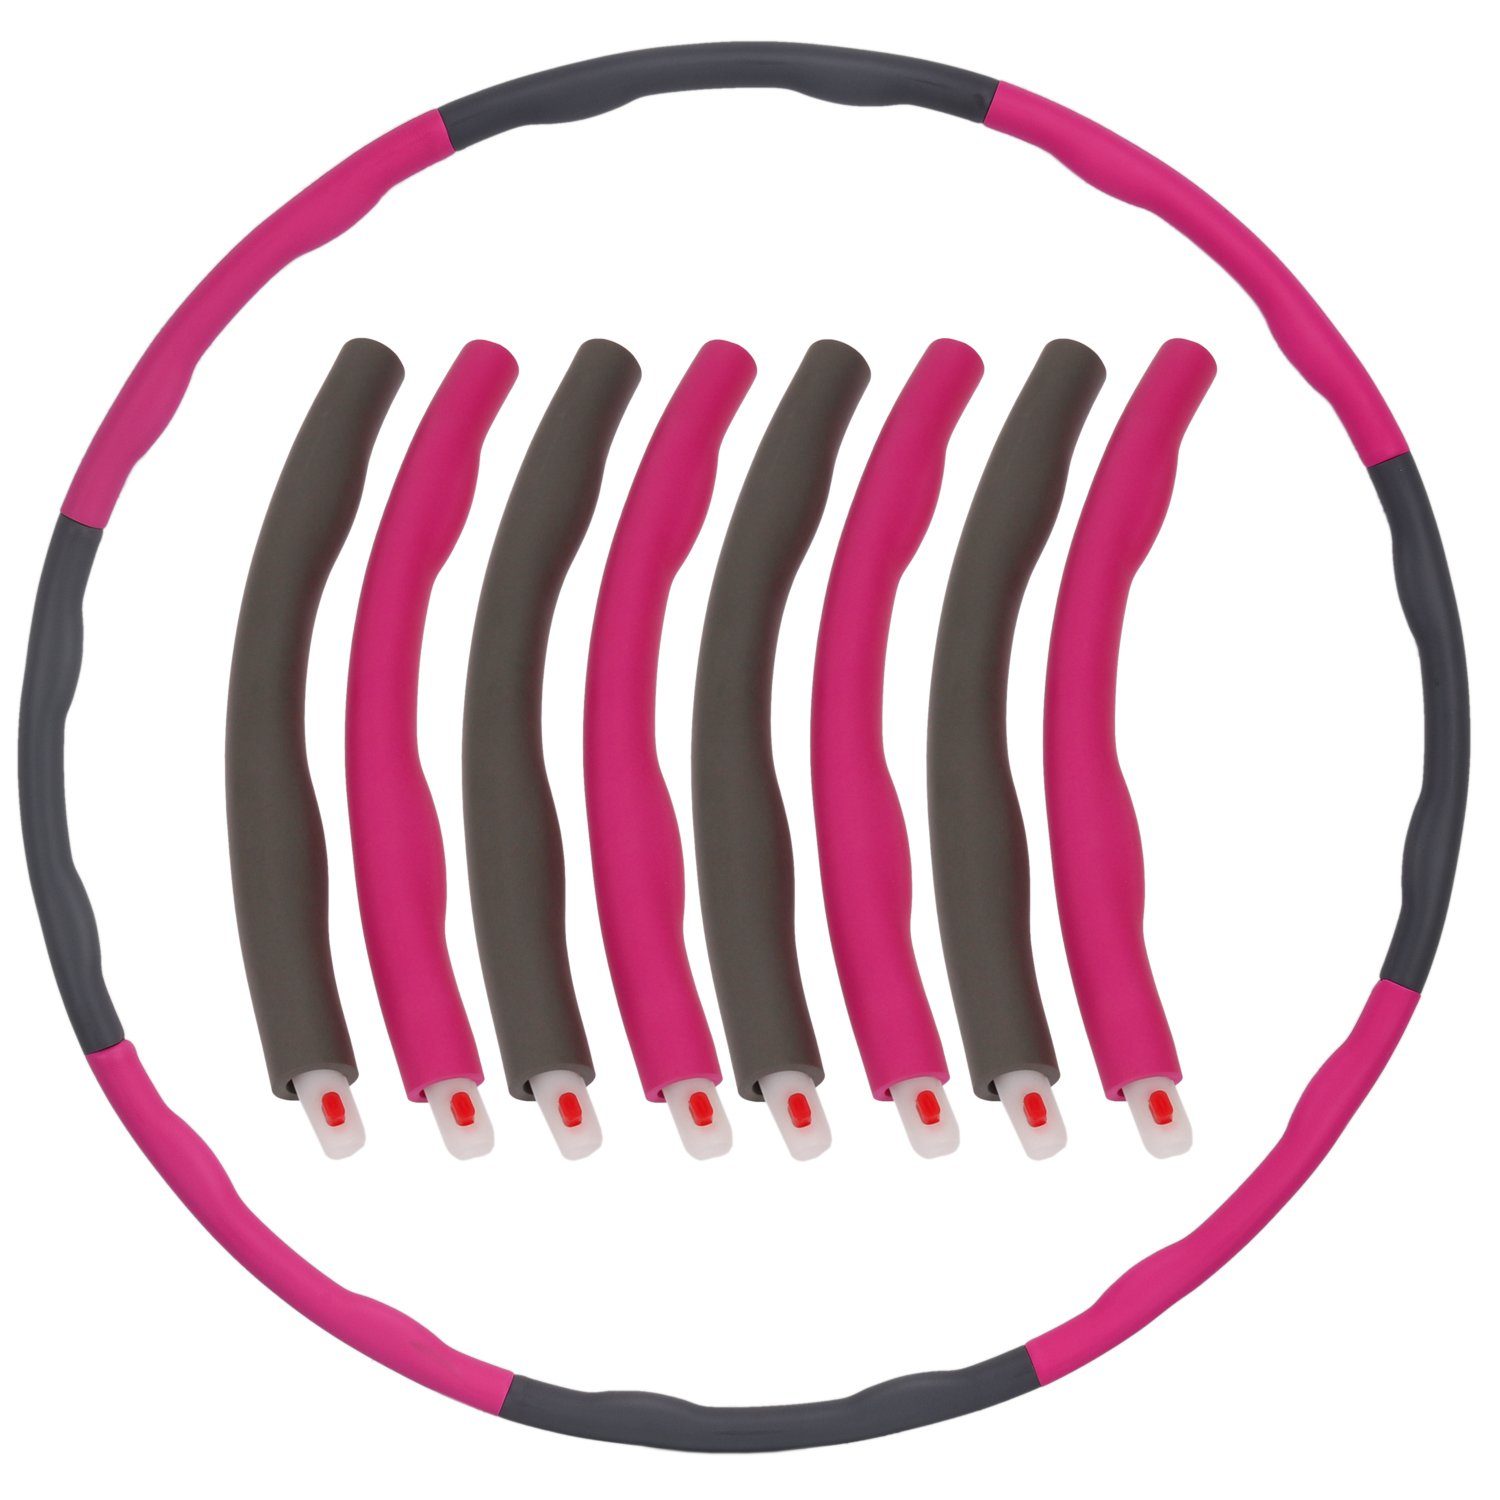 Hoop Hulla Soft-Elementen, Pink-Grau Hullahub + für Hula Hop Abnehmen Bauchmuskeln Erwachsene HUP für FunTomia mit zum Fortgeschrittene Training, Reifen 6-8 Fitness der steckbaren Trainieren Hula-Hoop-Reifen Hoola zum Anfänger